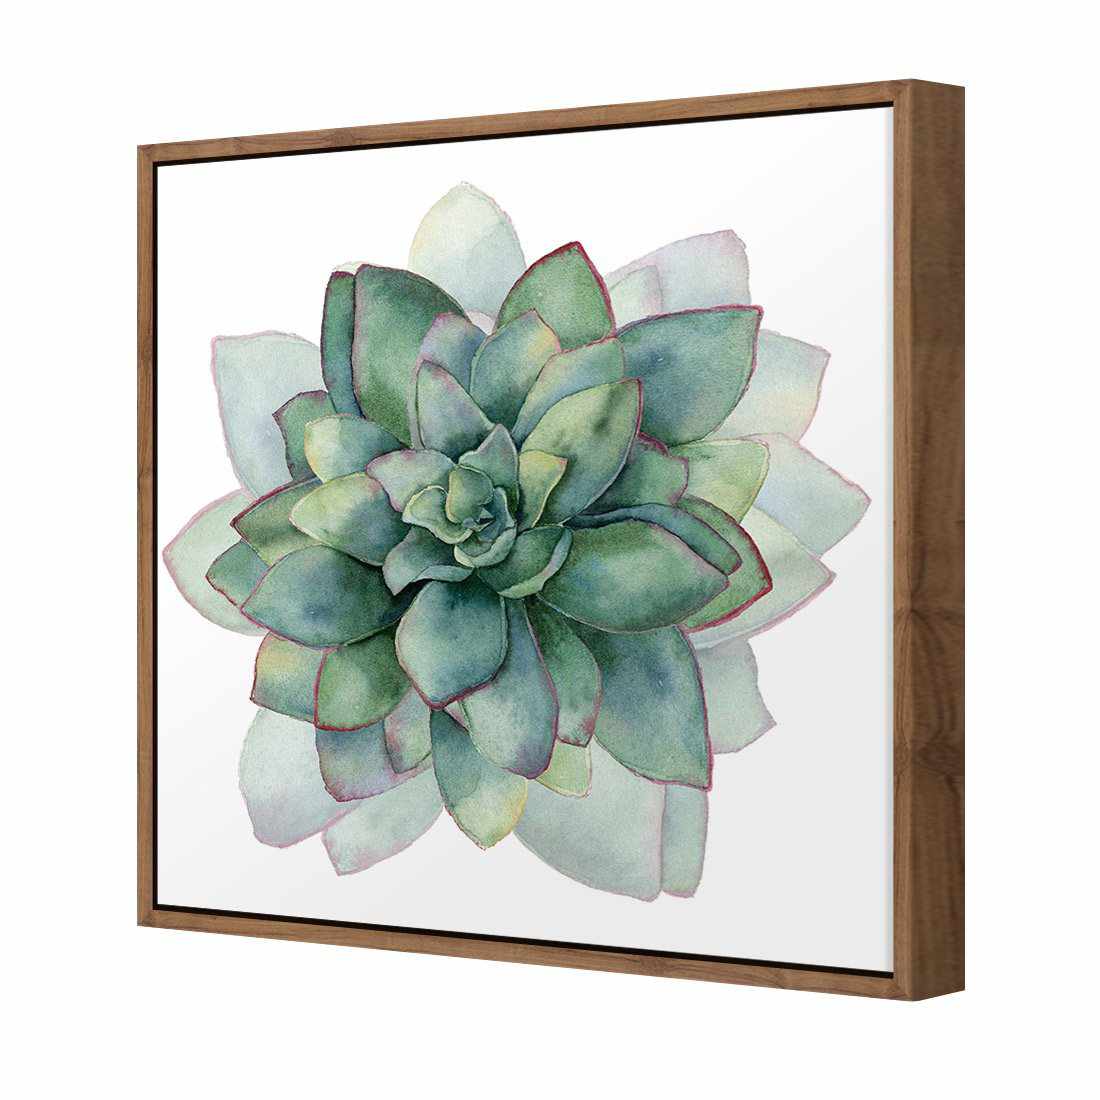 Succulent Spiral Canvas Art-Canvas-Wall Art Designs-30x30cm-Canvas - Natural Frame-Wall Art Designs